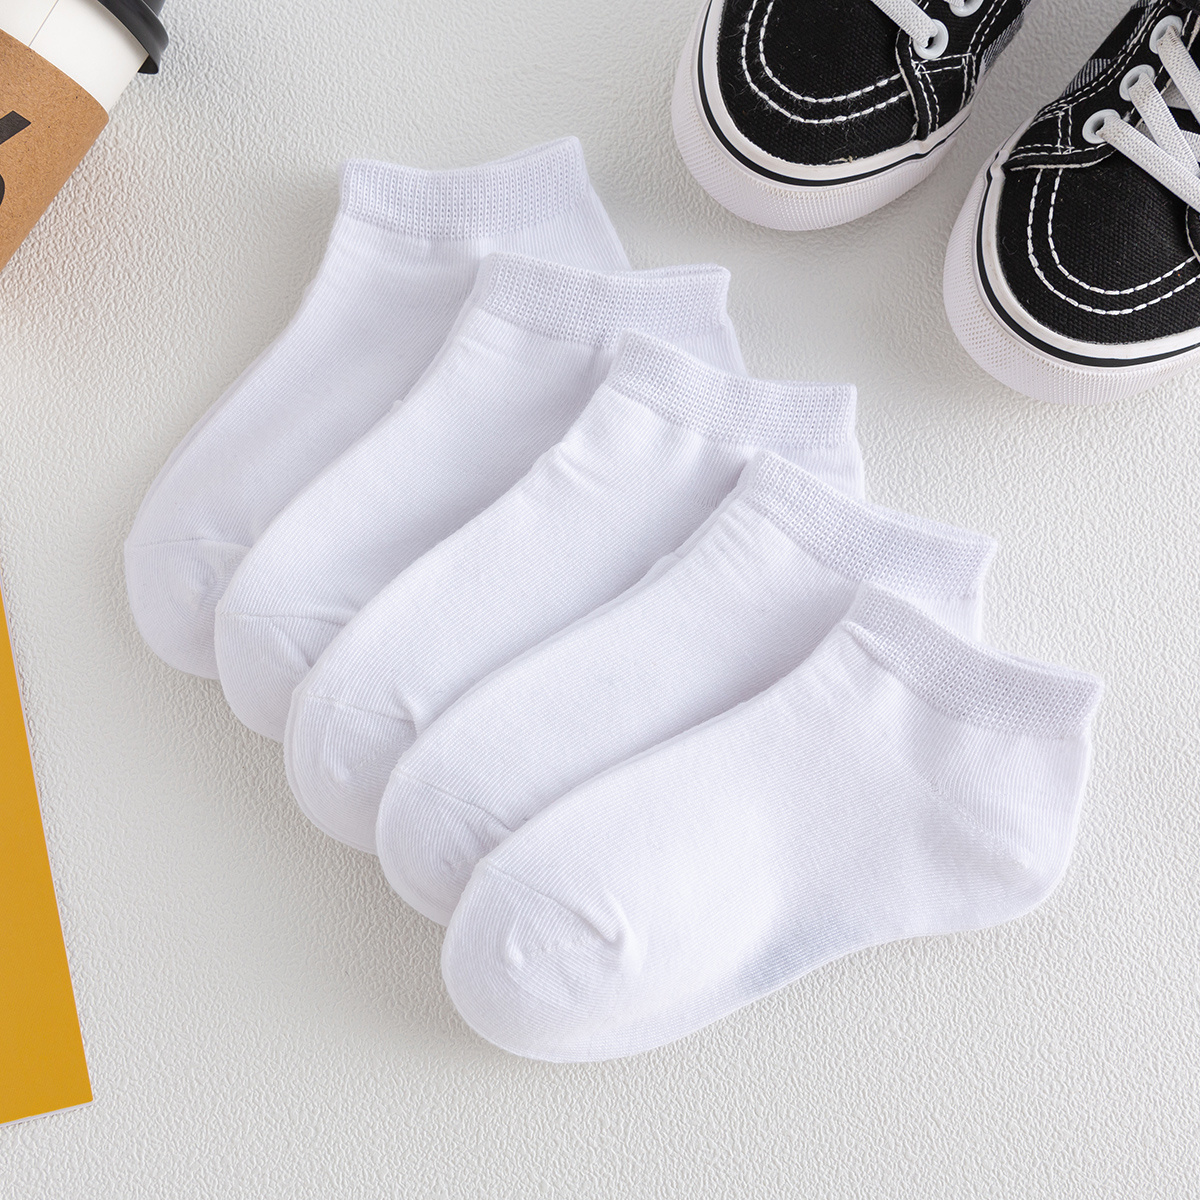 medias para niños de algodon calcetines blancos colores de niño 5 Pares  OFERTA